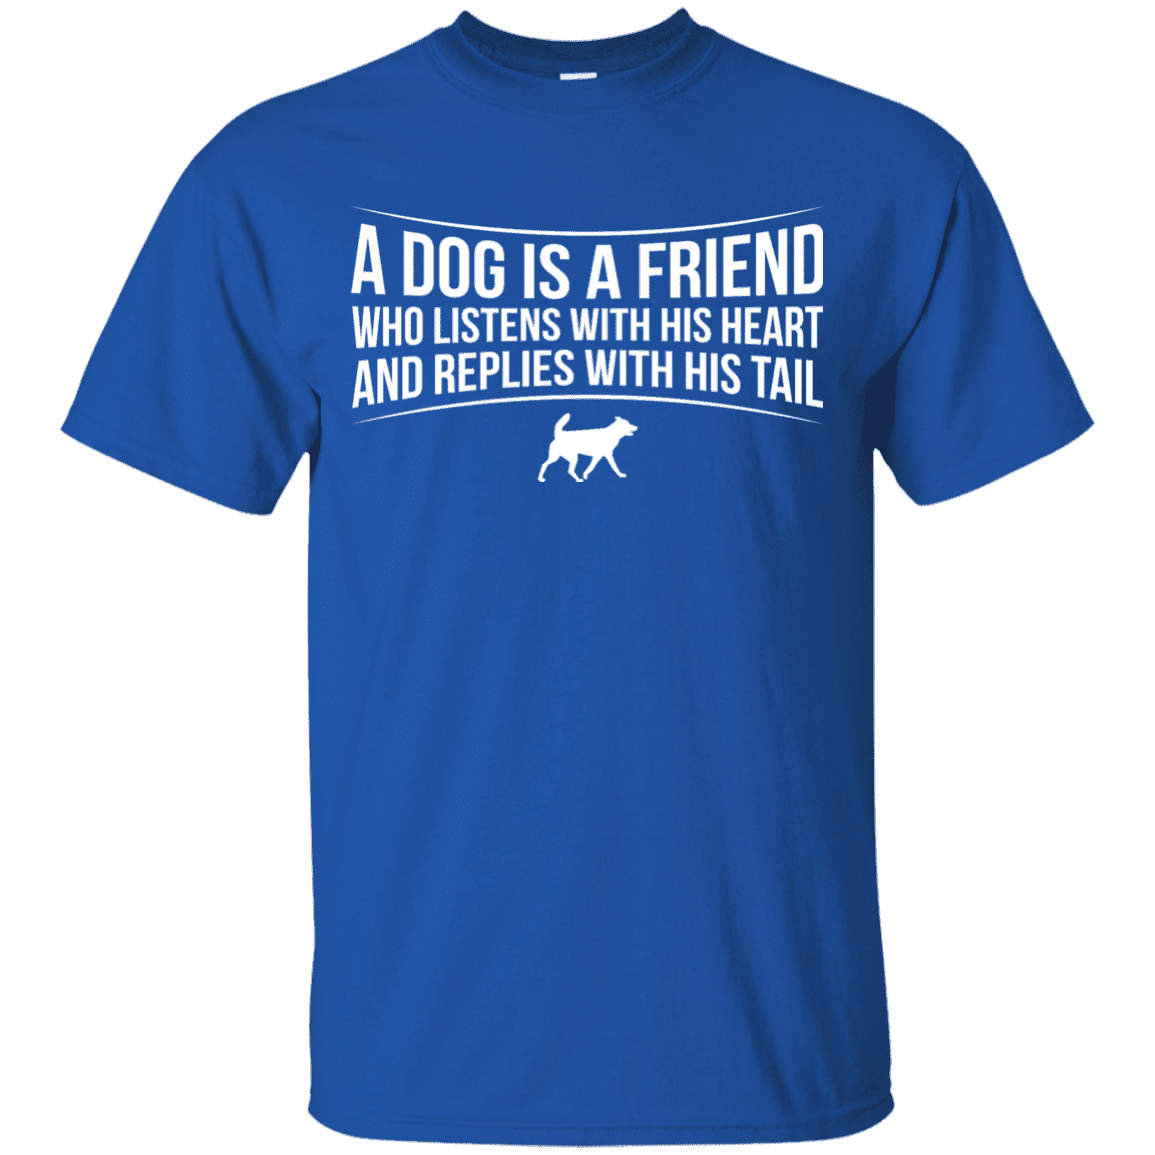 A Dog Is A Friend - T Shirt.